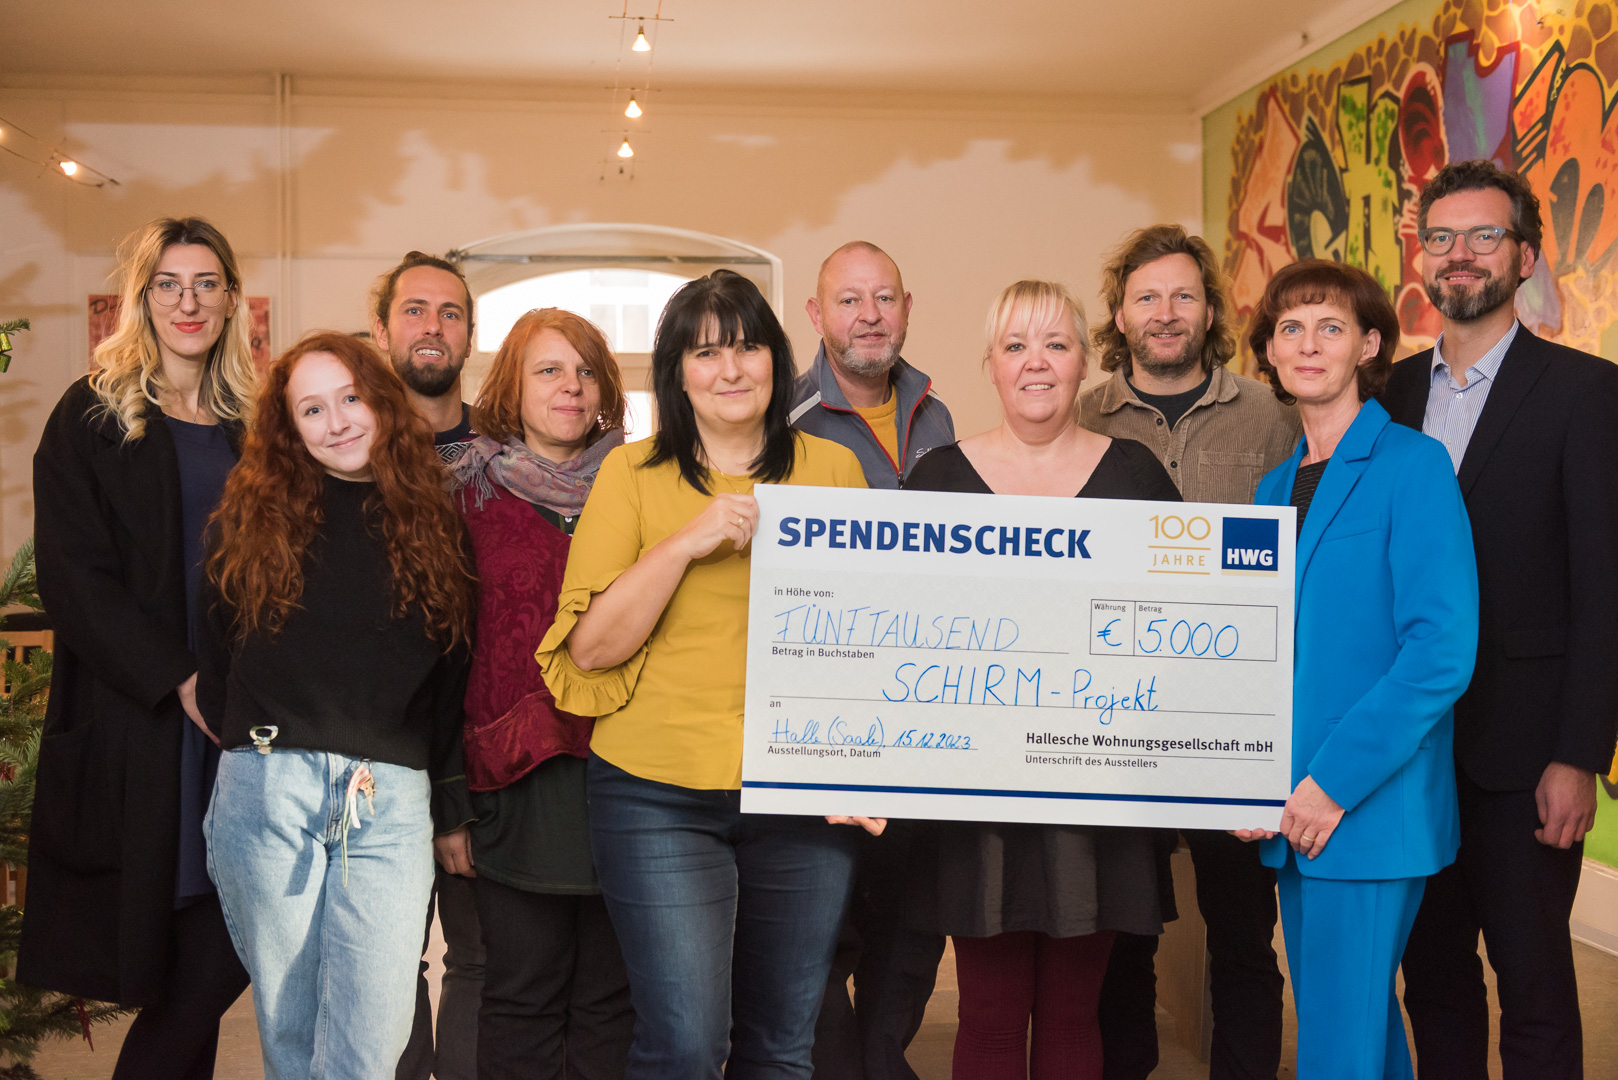 HWG-Geschäftsführerin Simone Danz (2. v.r.) überreicht symbolischen Spendenscheck an Bereichsleiterin Antje Weise (Mitte) sowie weitere Teammitglieder des SCHIRM-Projekts.